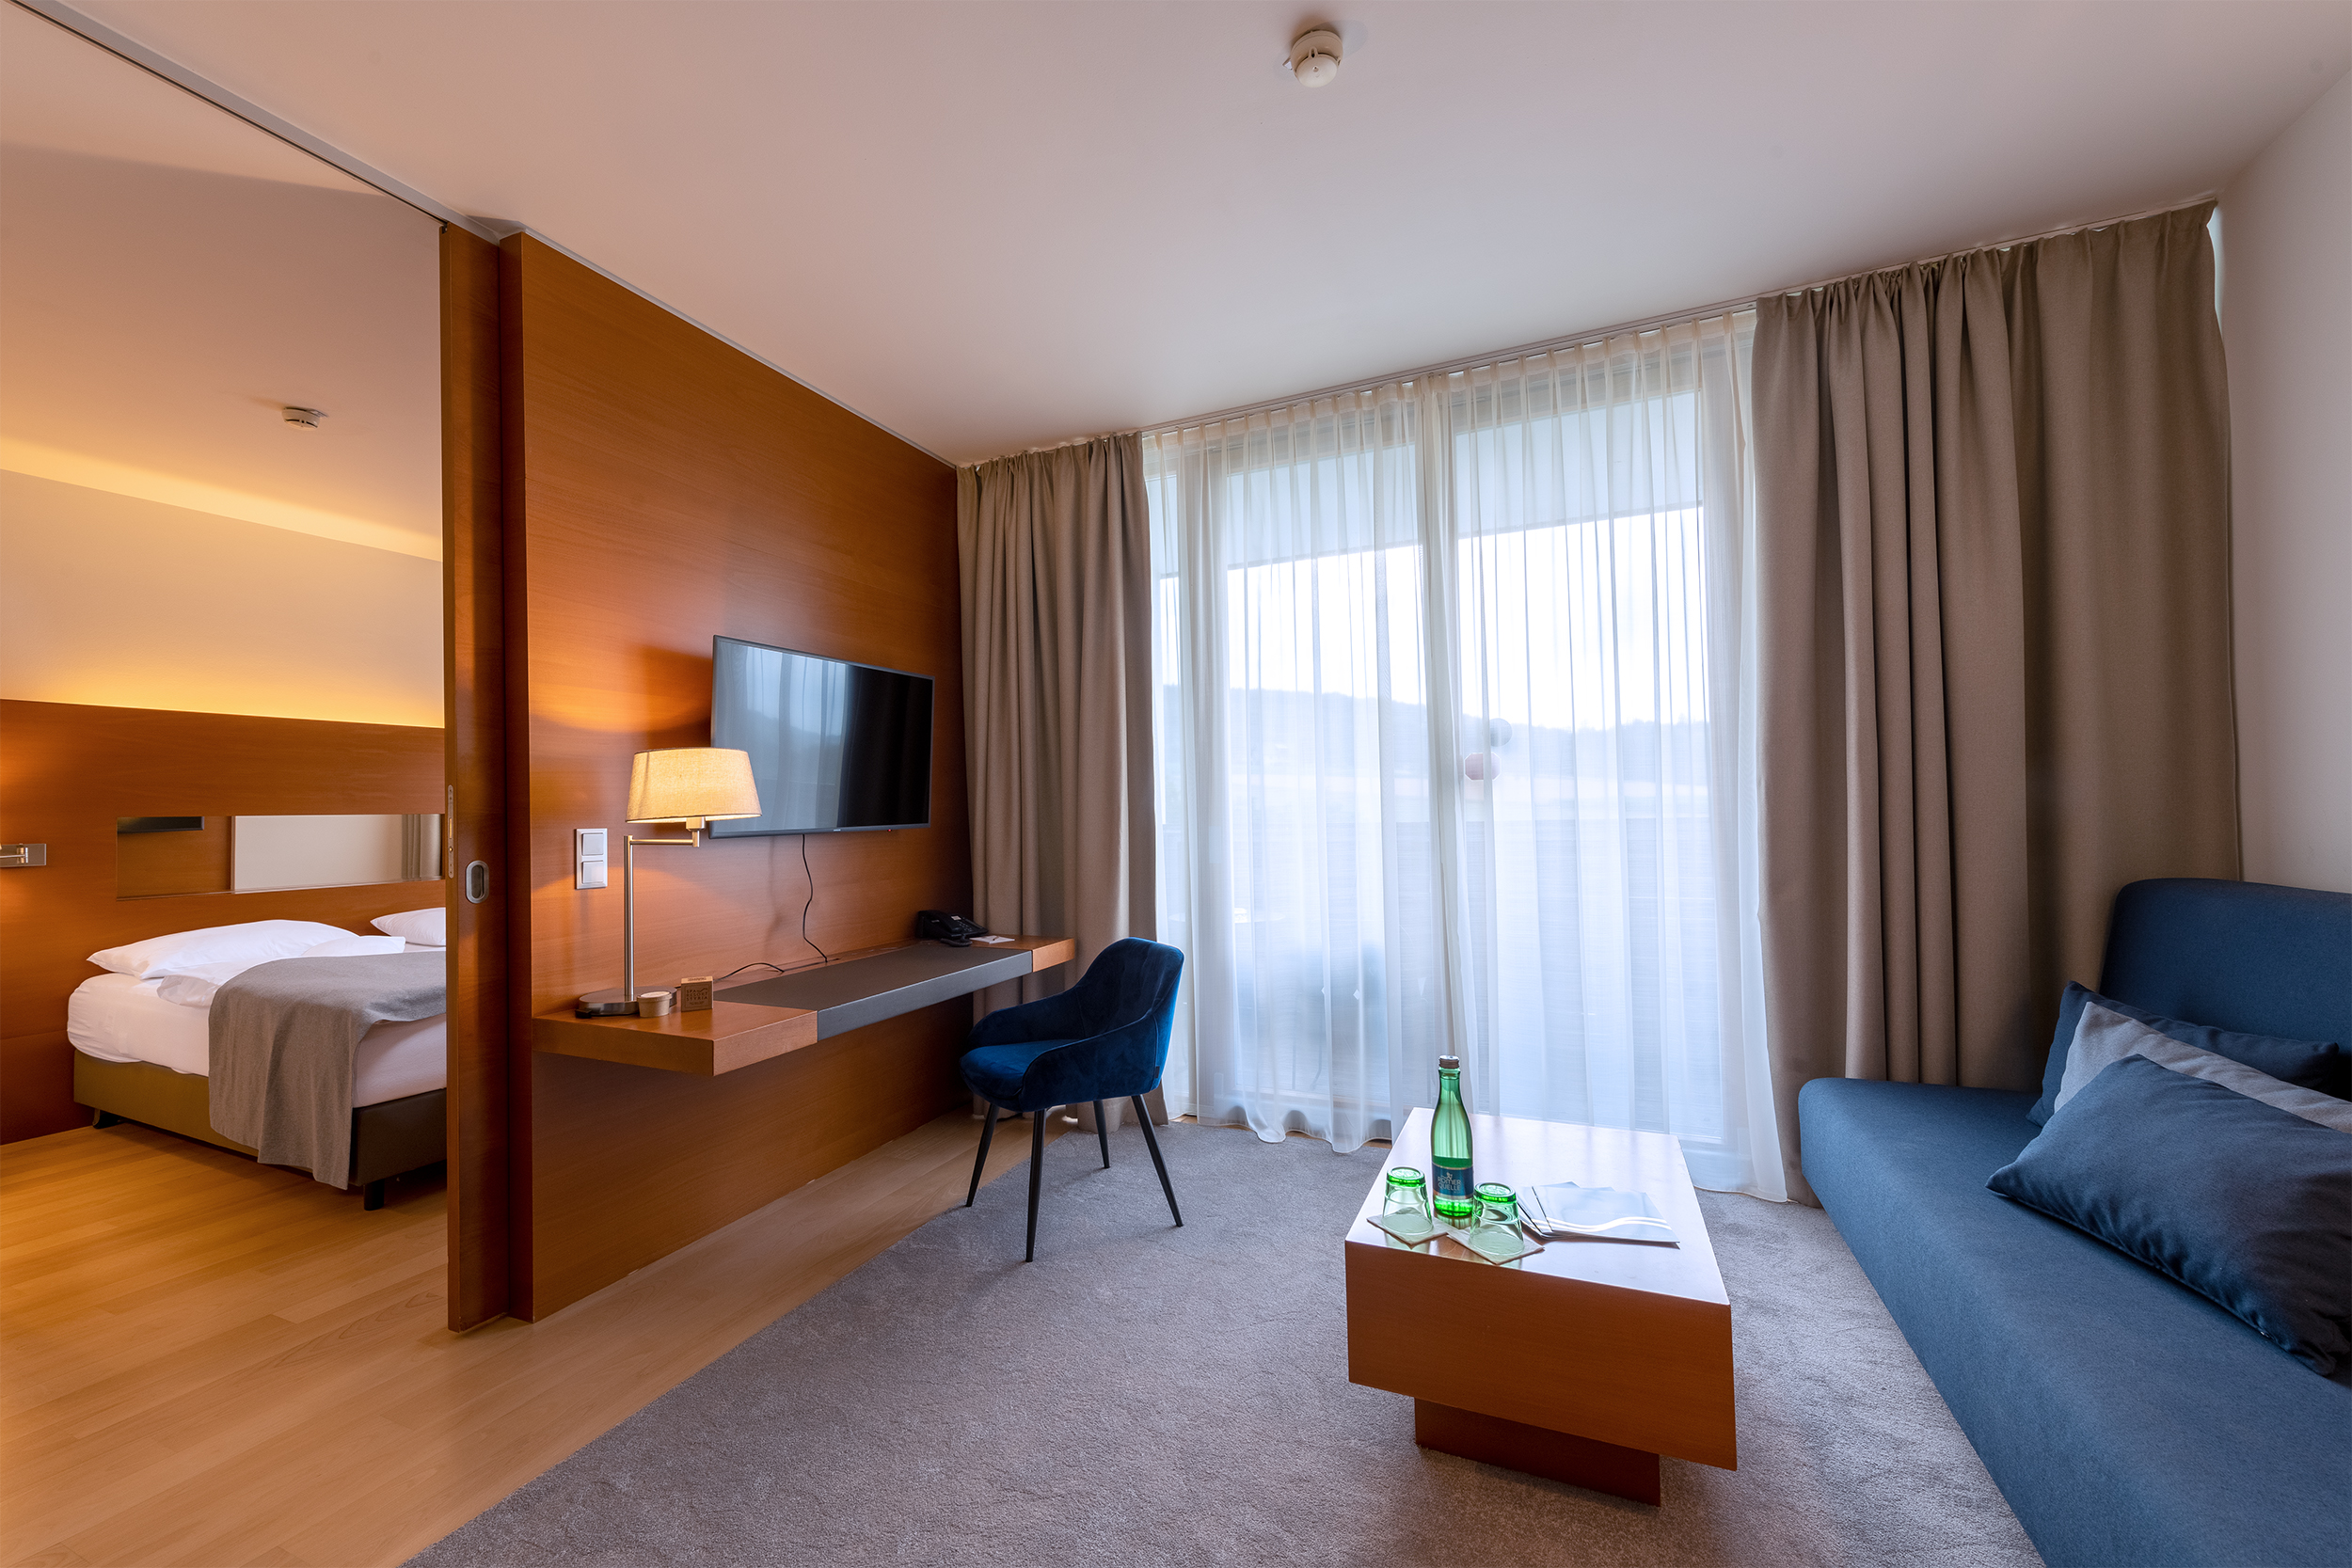 Urlaubsgutschein im Wert von 1.250 Euro für das Spa Resort Styria